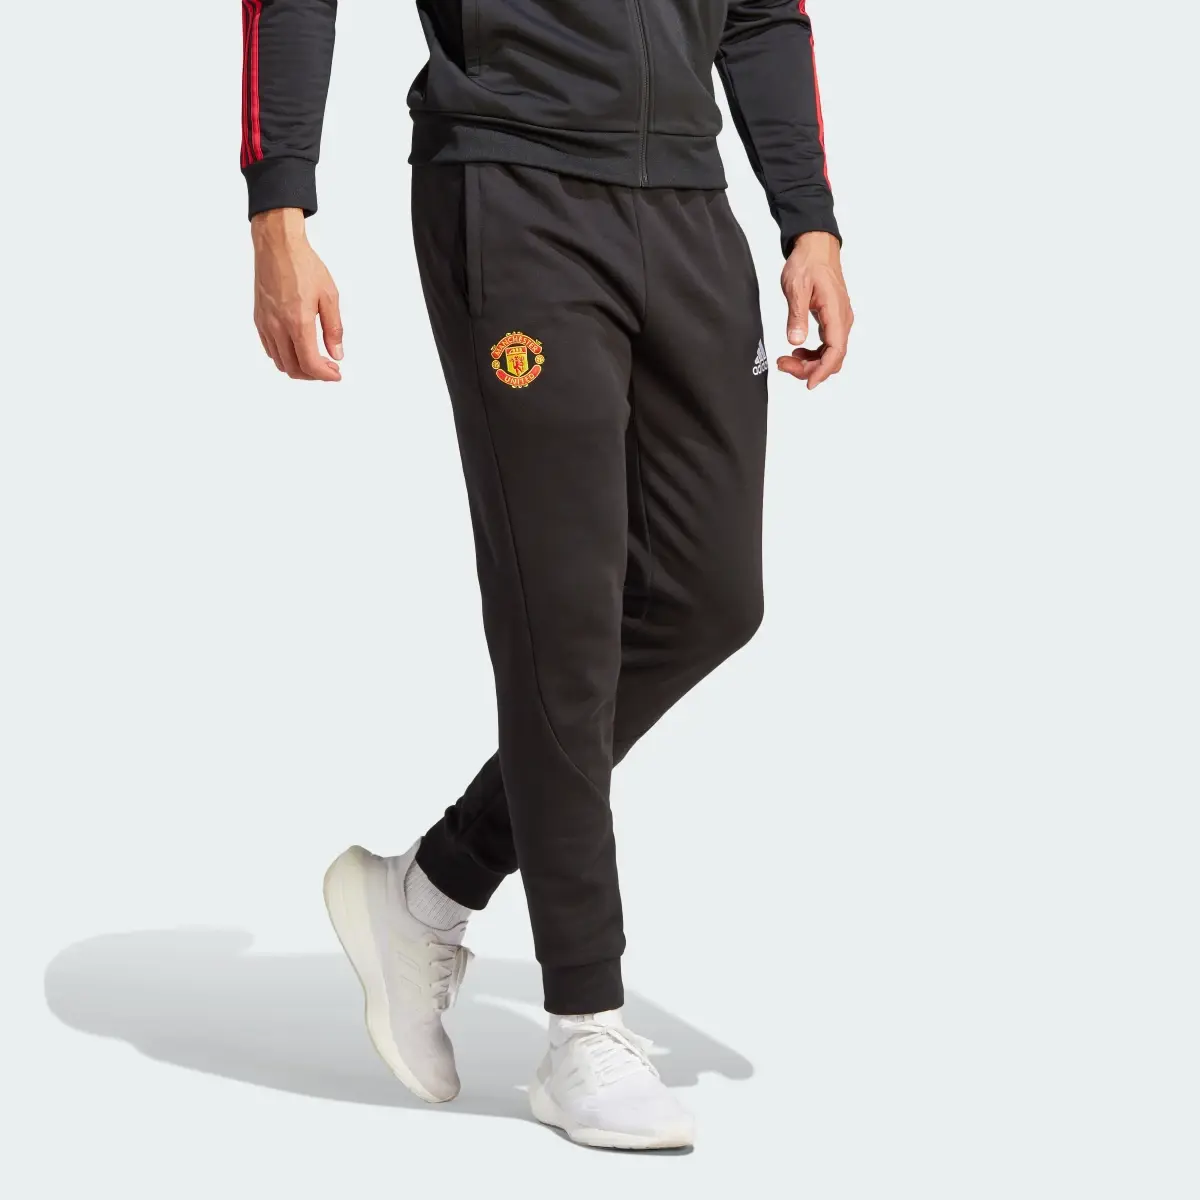 Adidas Pantalón Manchester United DNA Fleece. 1